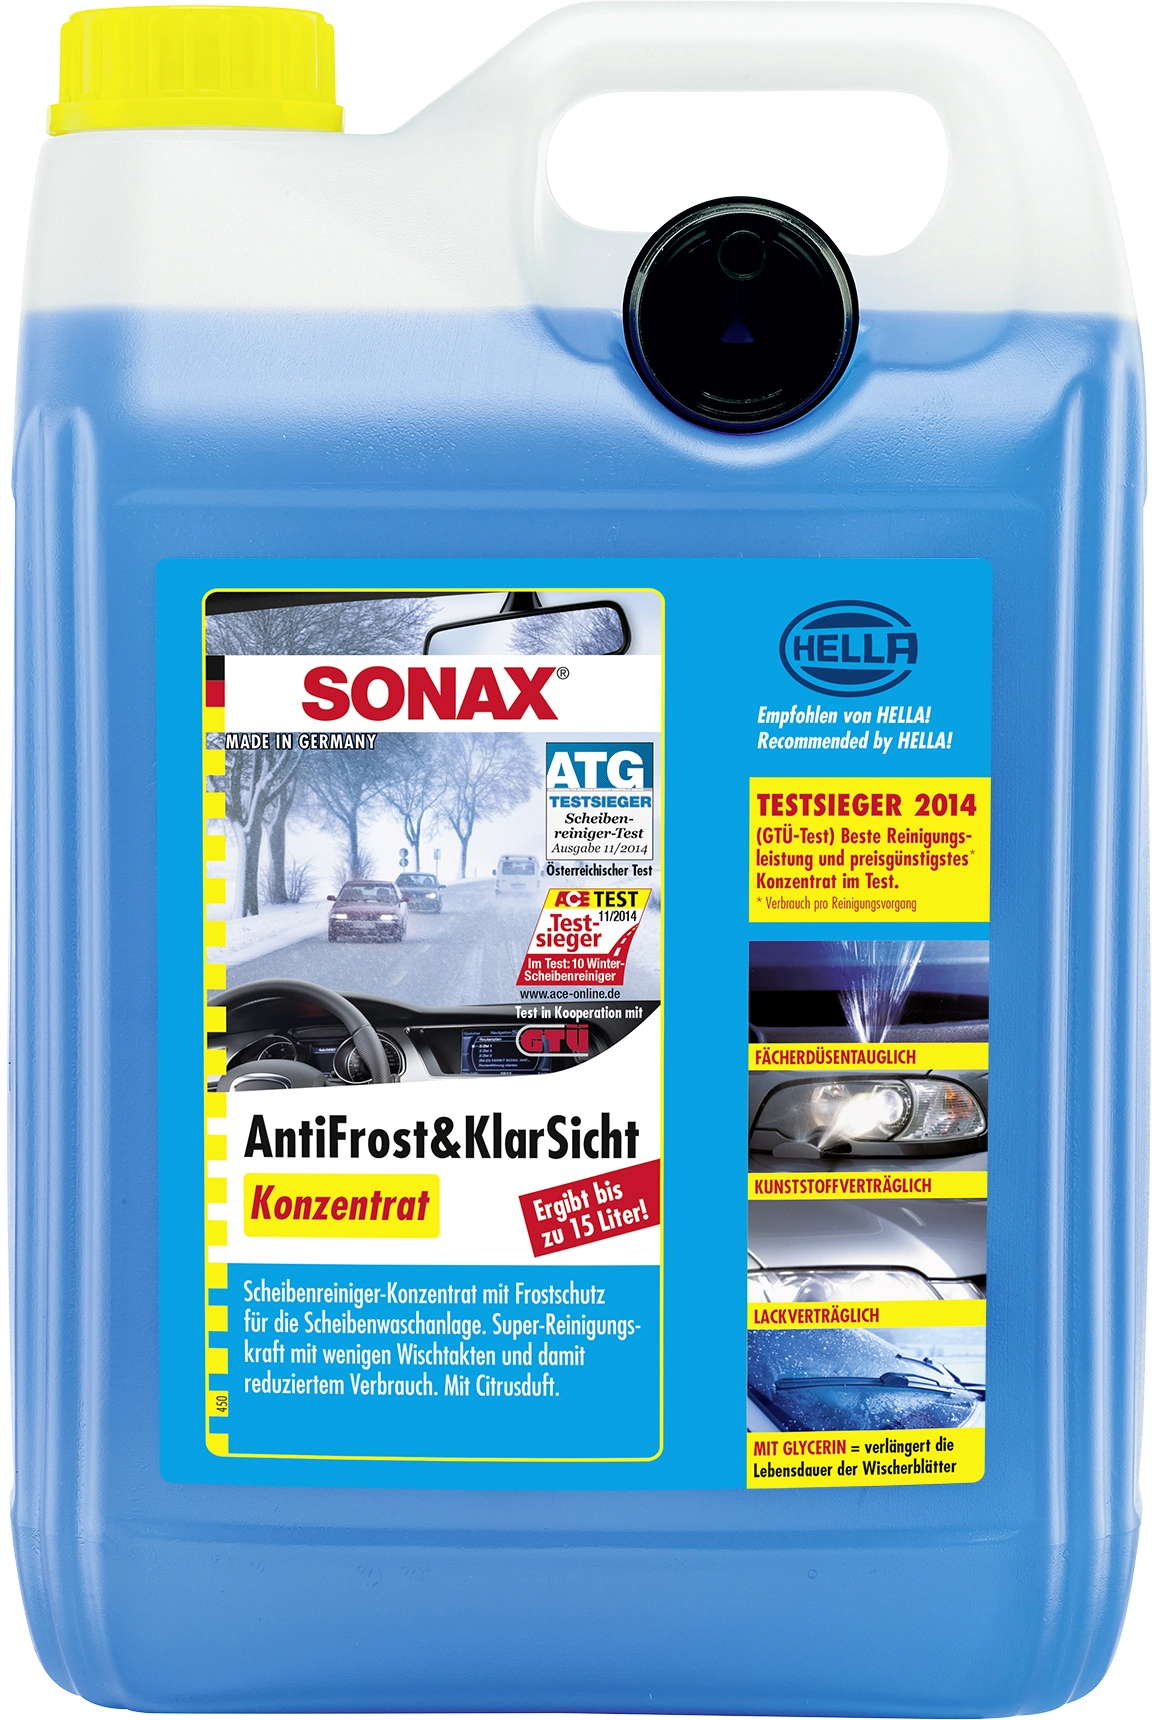 SONAX XTREME Anti Frost + Klar Sicht Konzentrat 5 L Frostschutz Enteiser  Lefeld Werkzeug